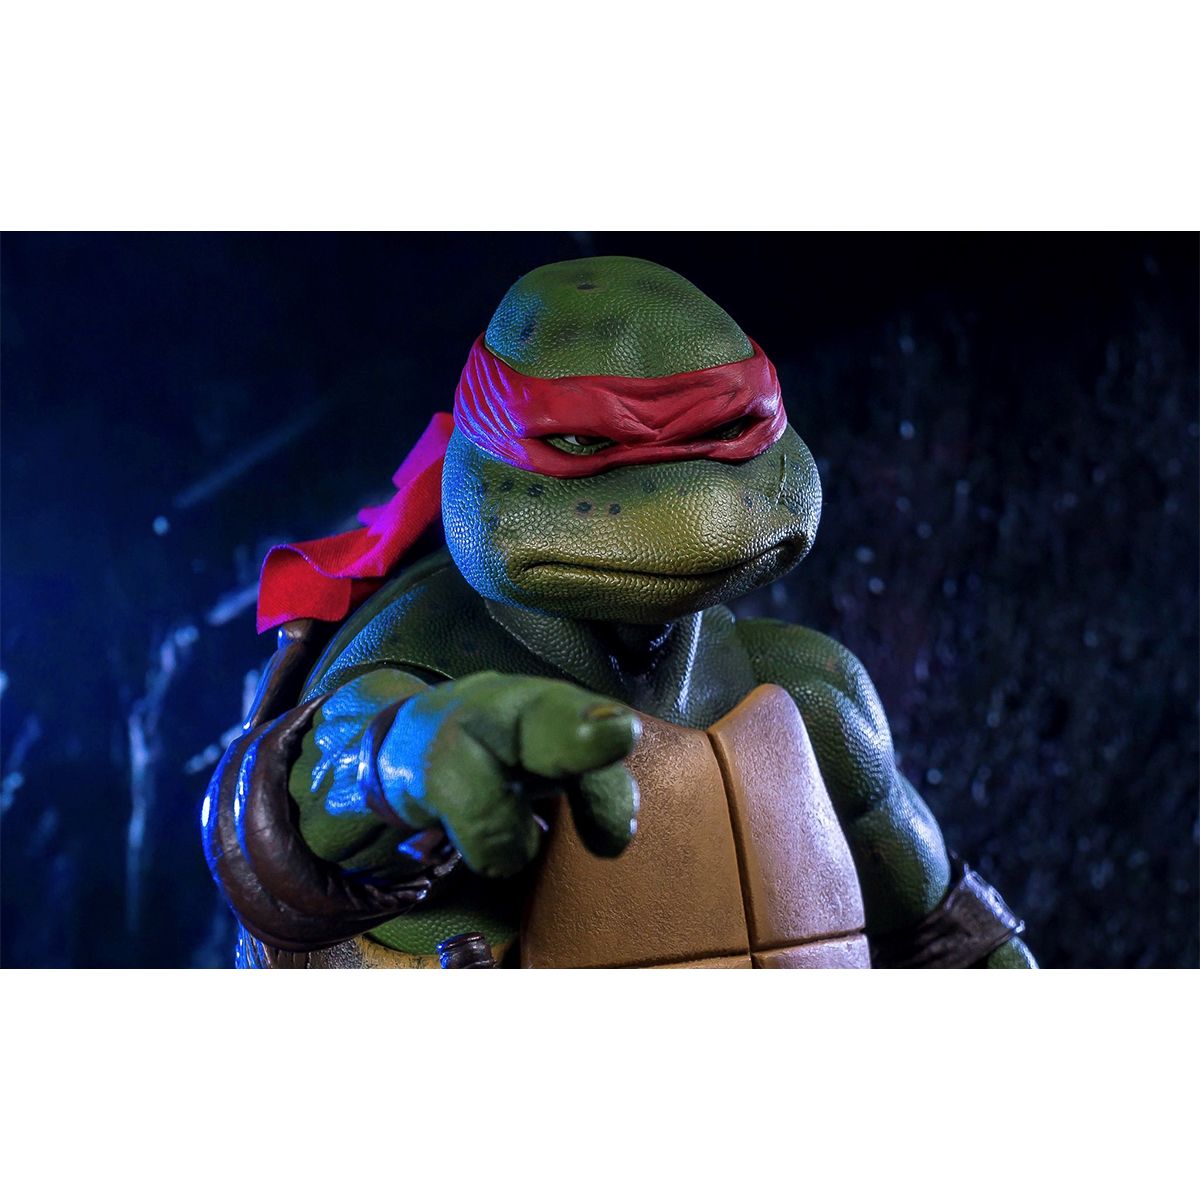 اکشن فیگور نکا مدل لاکپشت های نینجا طرح Turtle Ninja مجموعه 4 عددی -  - 6